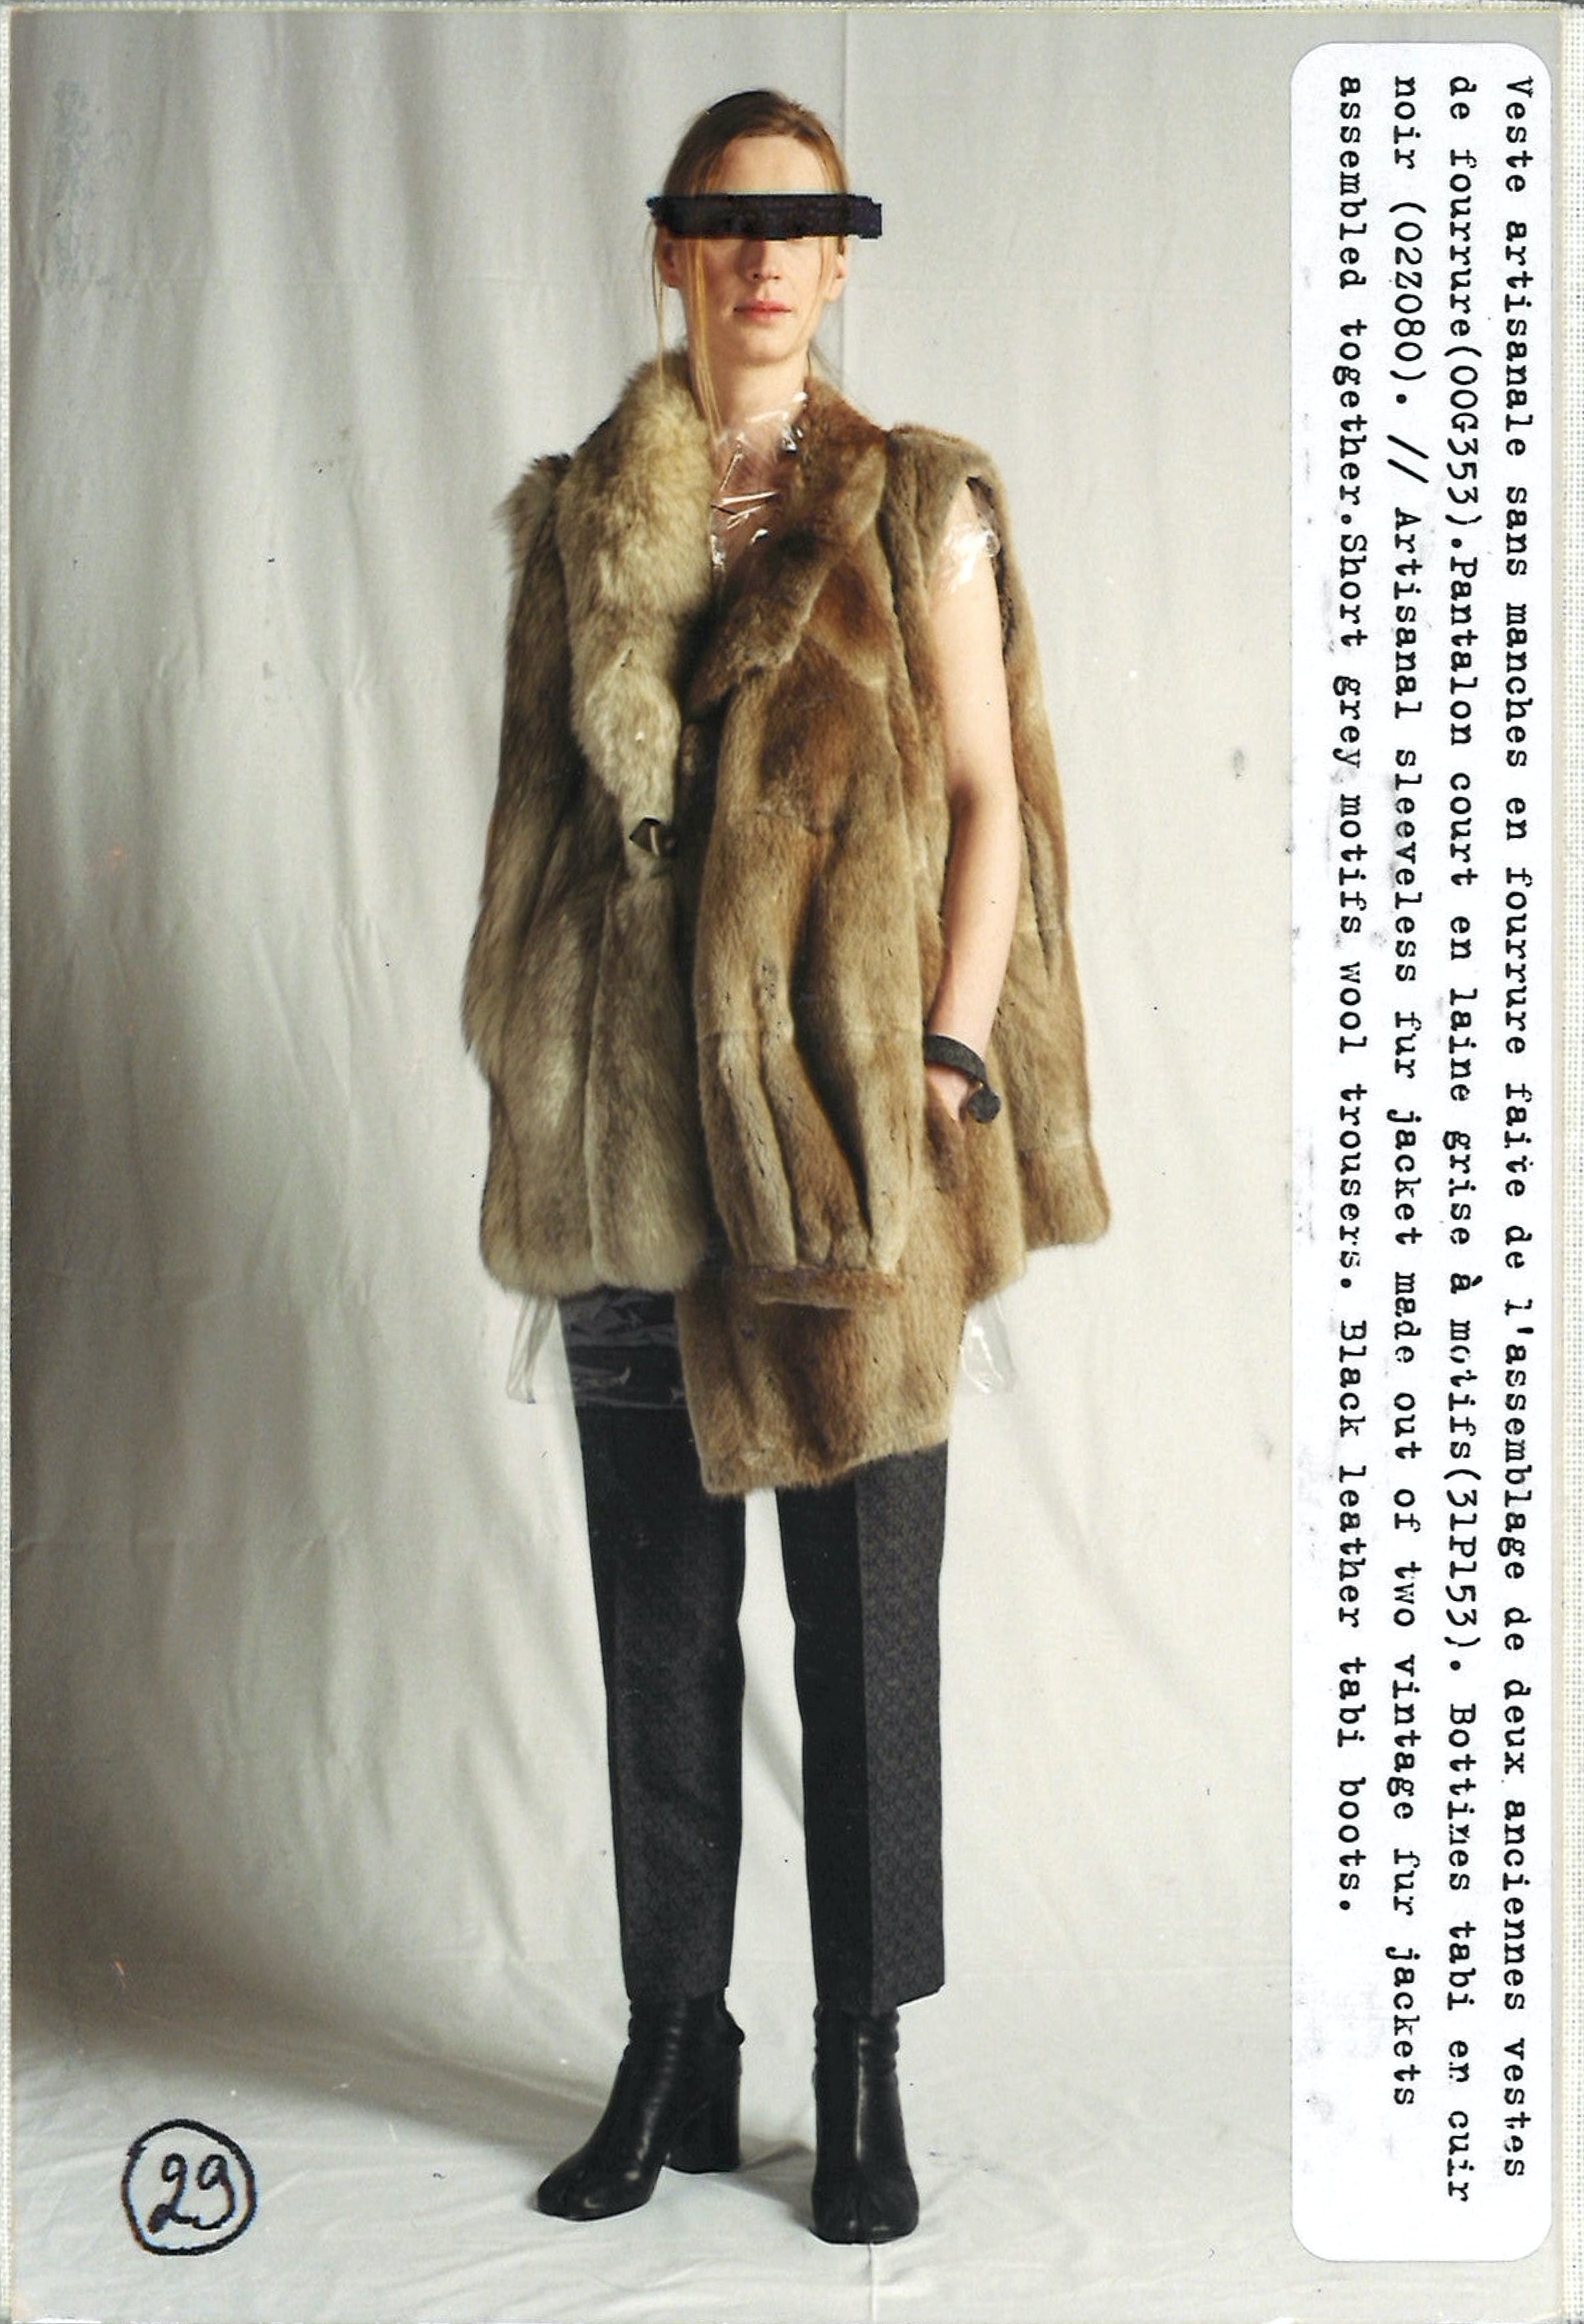 Maison Martin Margiela Lookbook
Womenswear Collection Autumn/Winter 2002-03